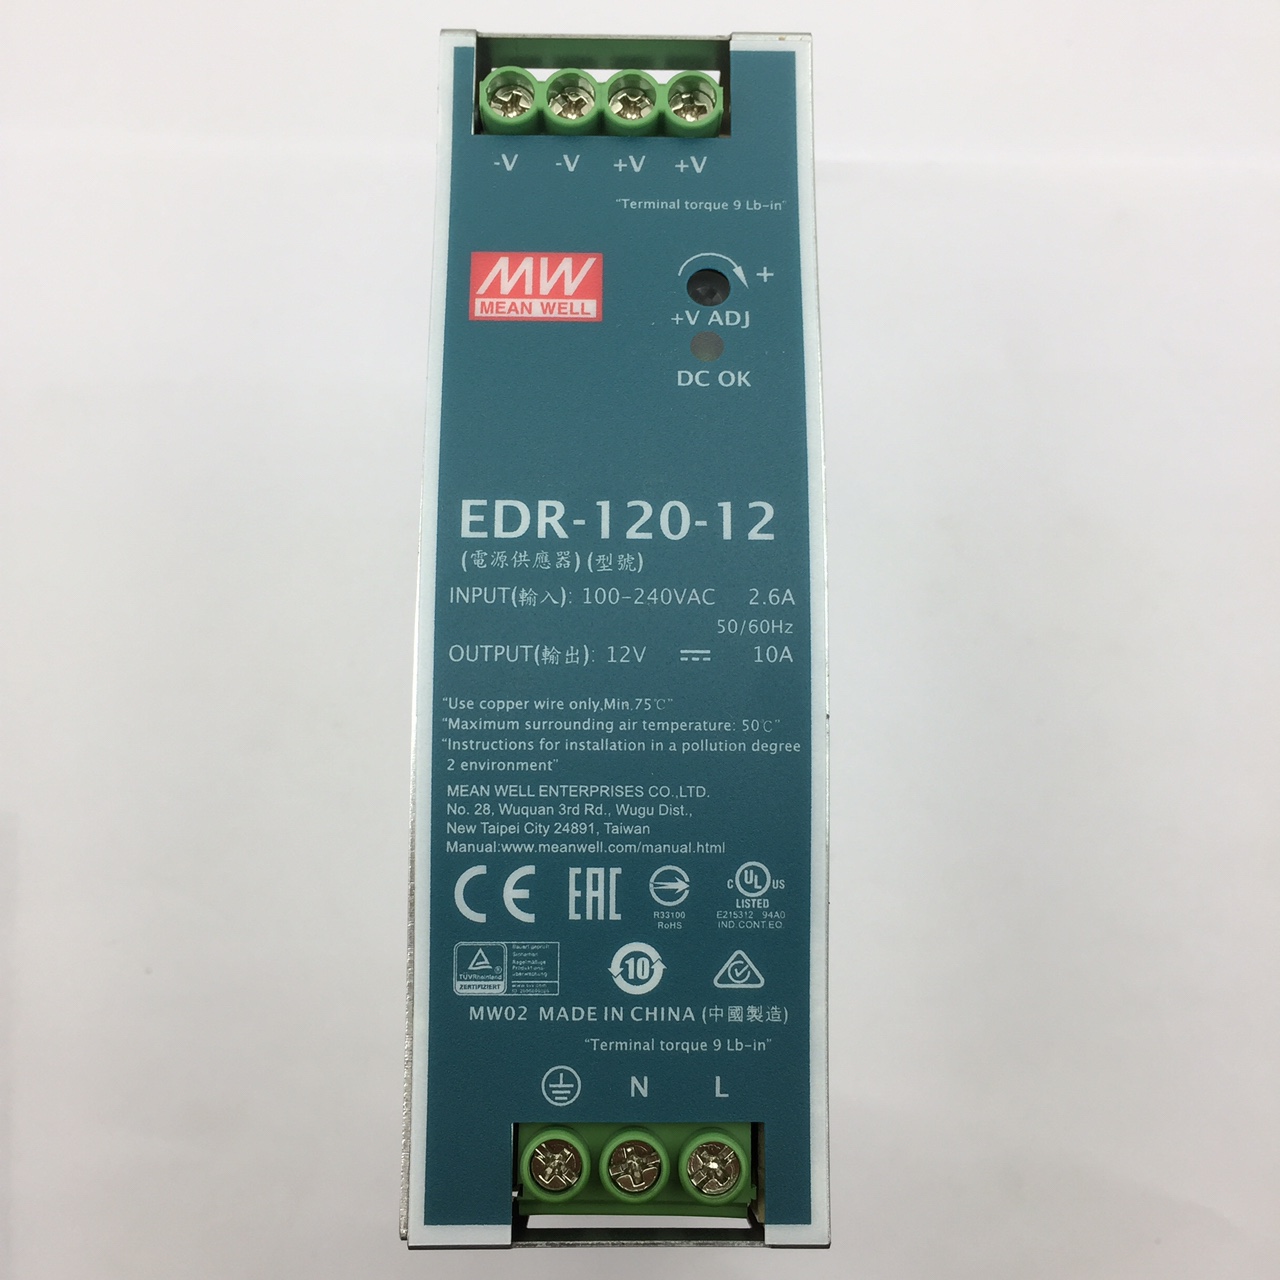 Nguồn tổ ong MEANWELL 12V 10A / EDR-120-12 có chống nhiễu lắp cho tủ điện